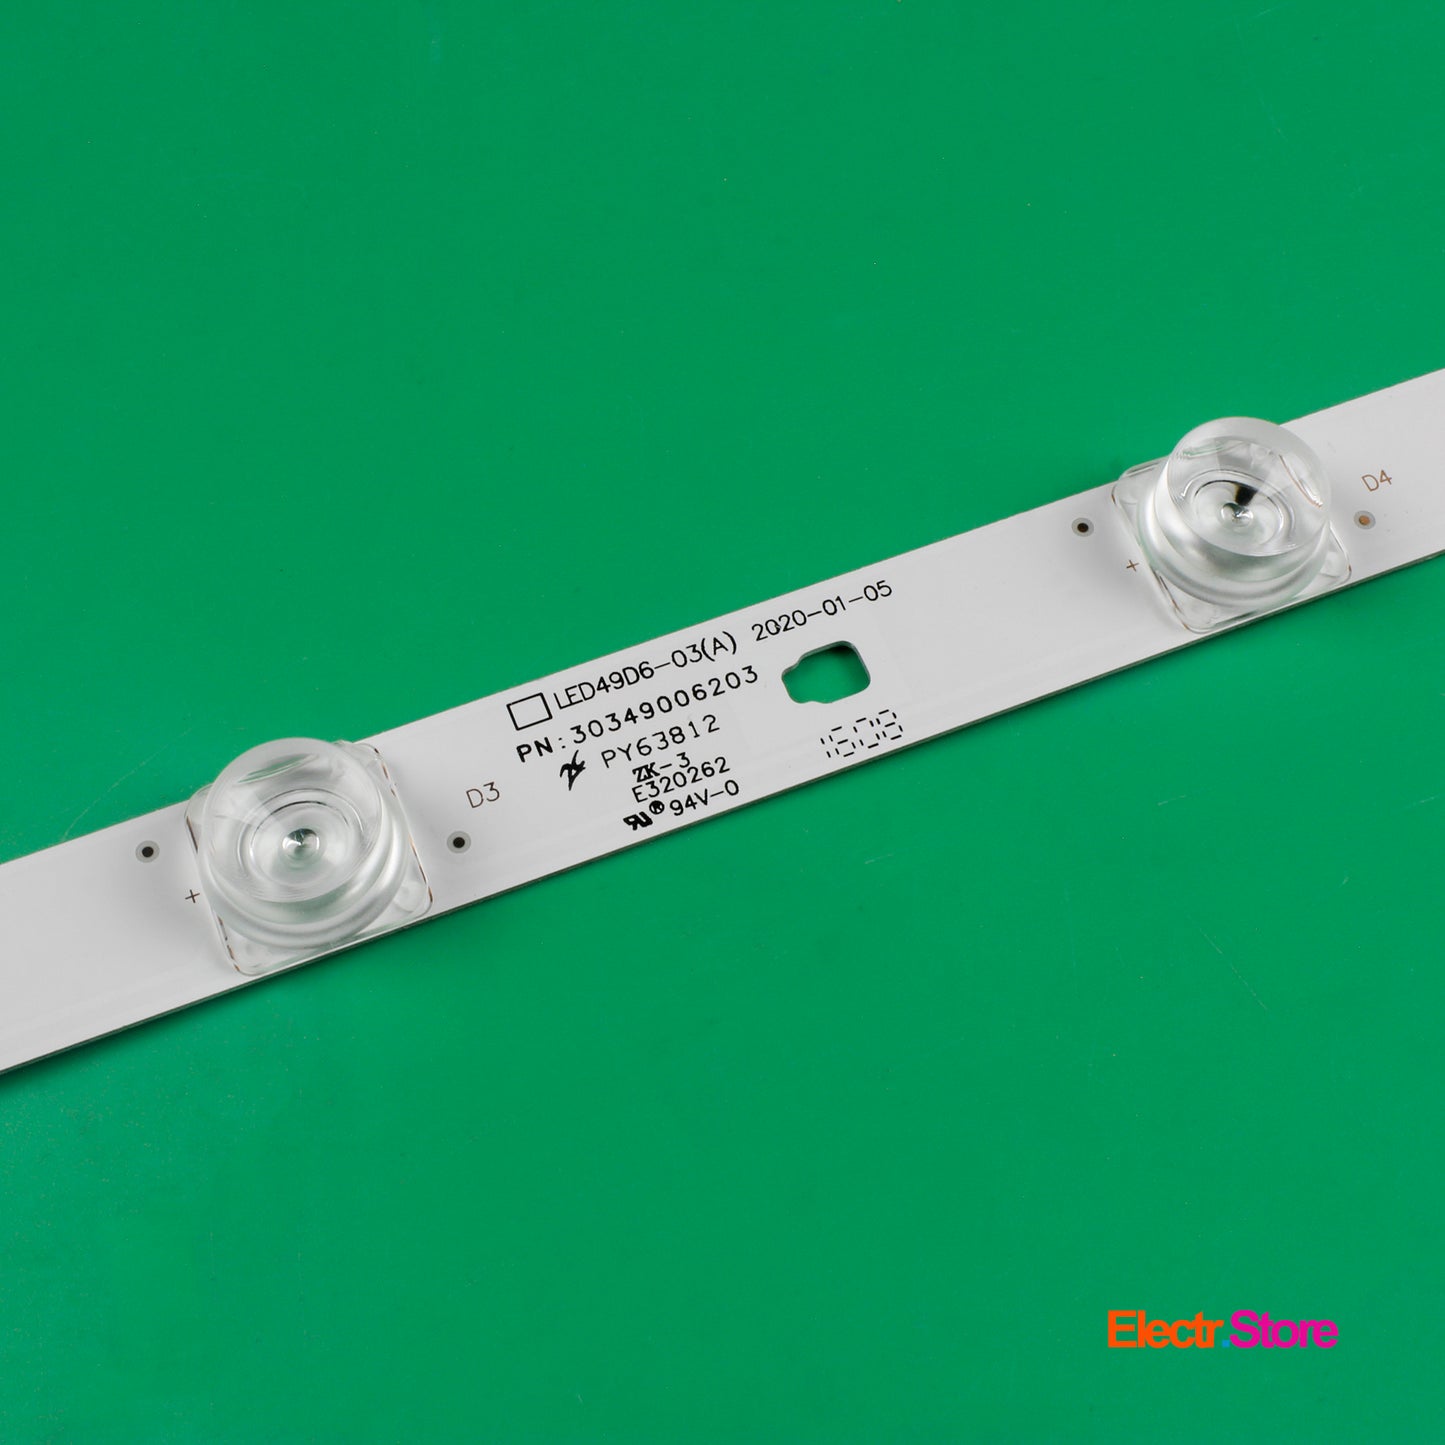 LED Backlight Strip Kits, LED49D6-03(A), 30349006203, LED50D6-ZC14AG-03 (12 pcs/kit), for TV49", 50" 30349006203 49"50" Chonghong FunTV Haier LED Backlights LED49D6-03(A) Multi Others Panda Electr.Store